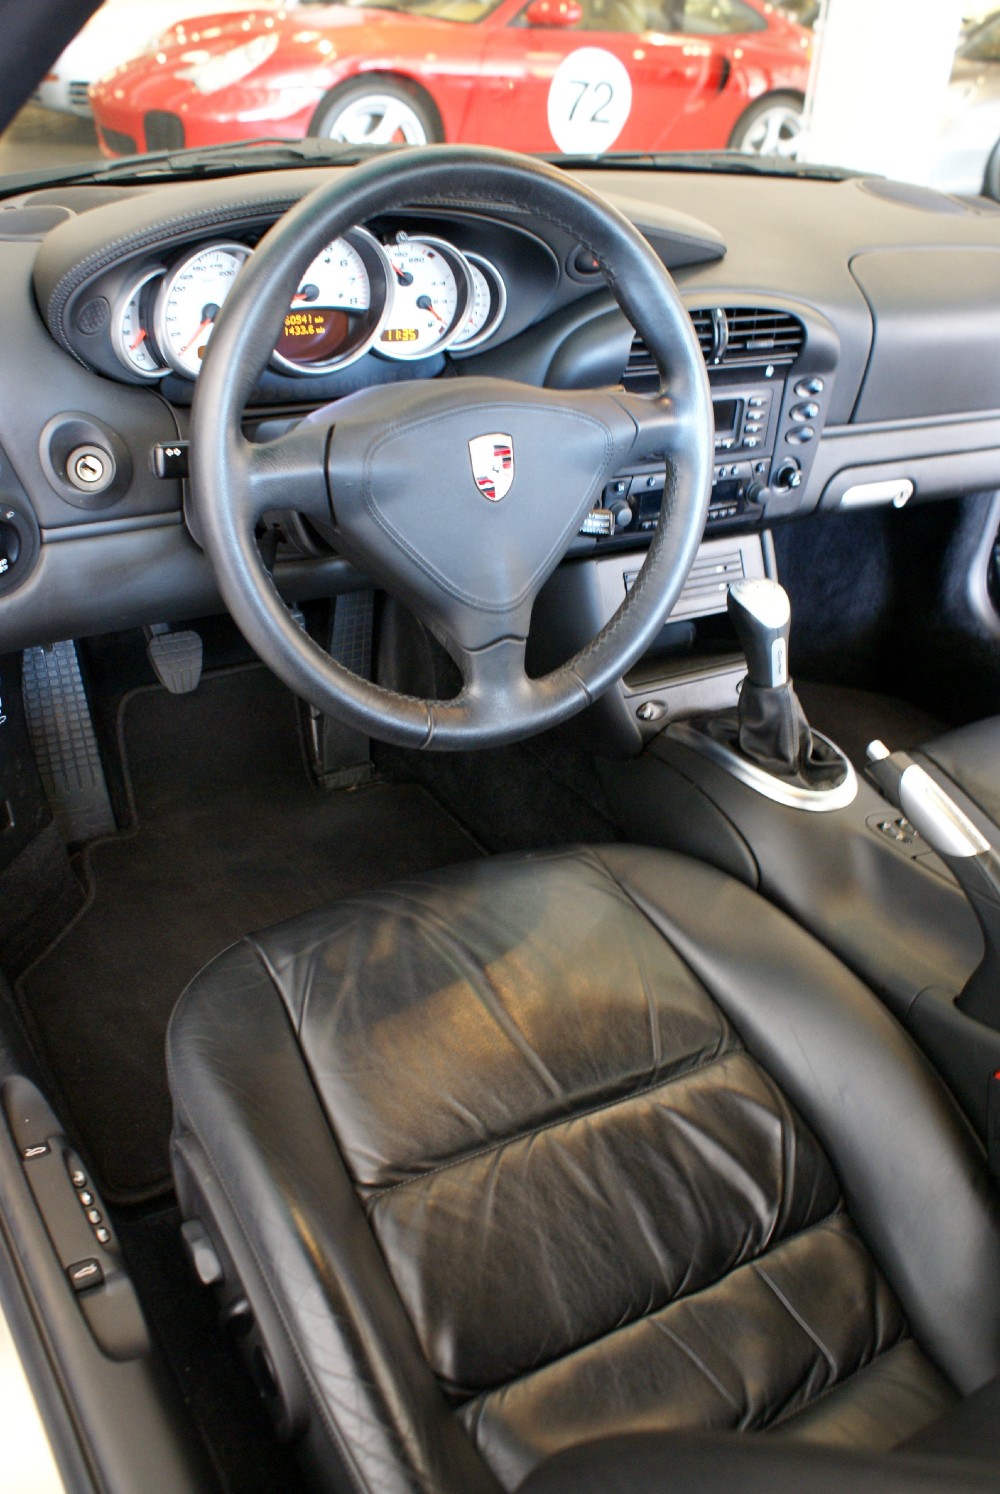 Used 2002 Porsche 911 Turbo